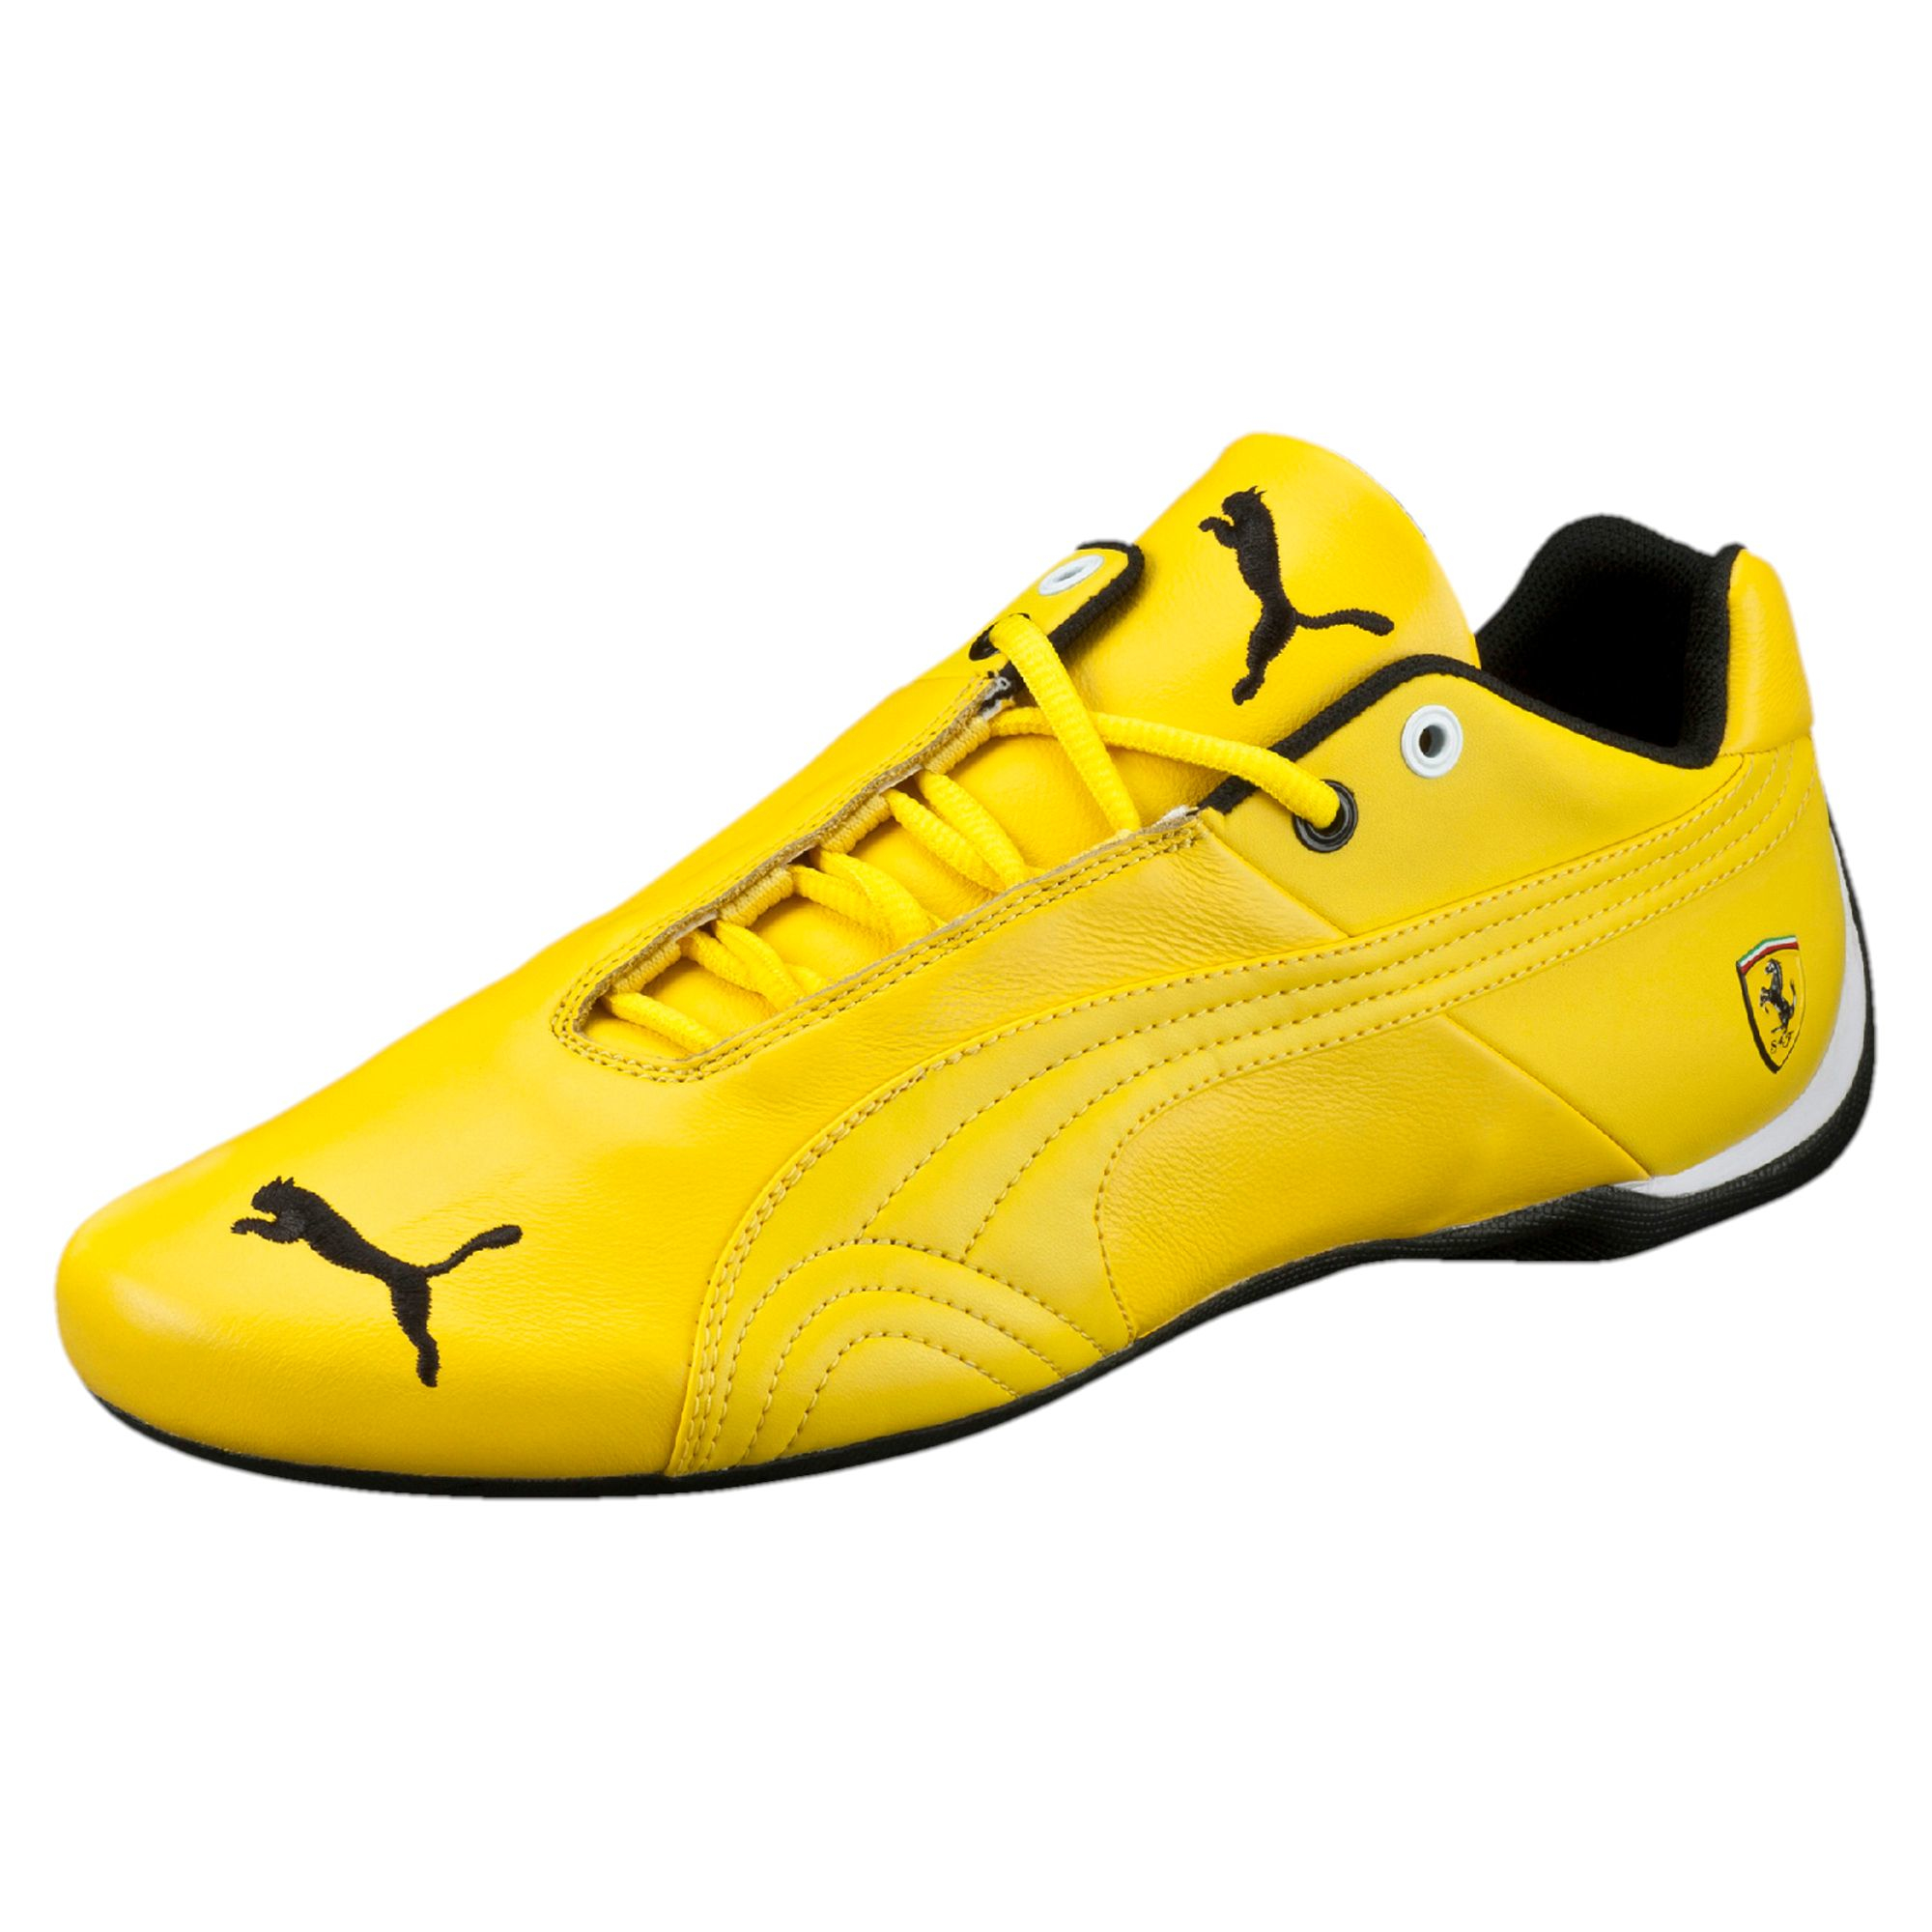 Lyst Puma Ferrari Future Cat Leather Men's Shoes in